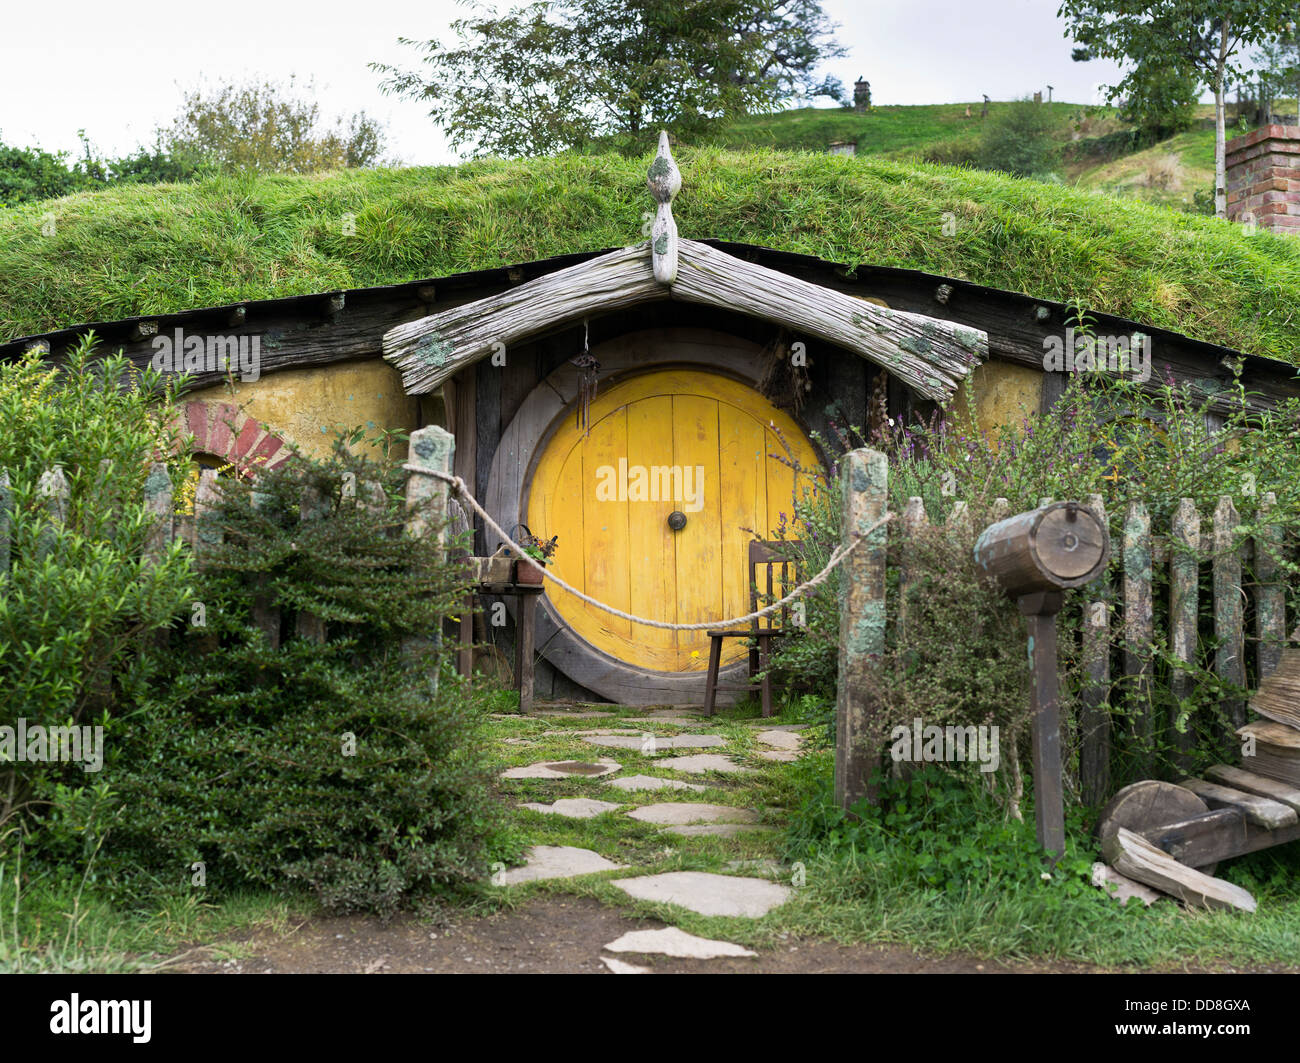 Dh Hobbits cottage Tür HOBBITON NEUSEELAND Garten film film Website Herr der Ringe Filme Hobbit Haus Mitte der Erde Stockfoto